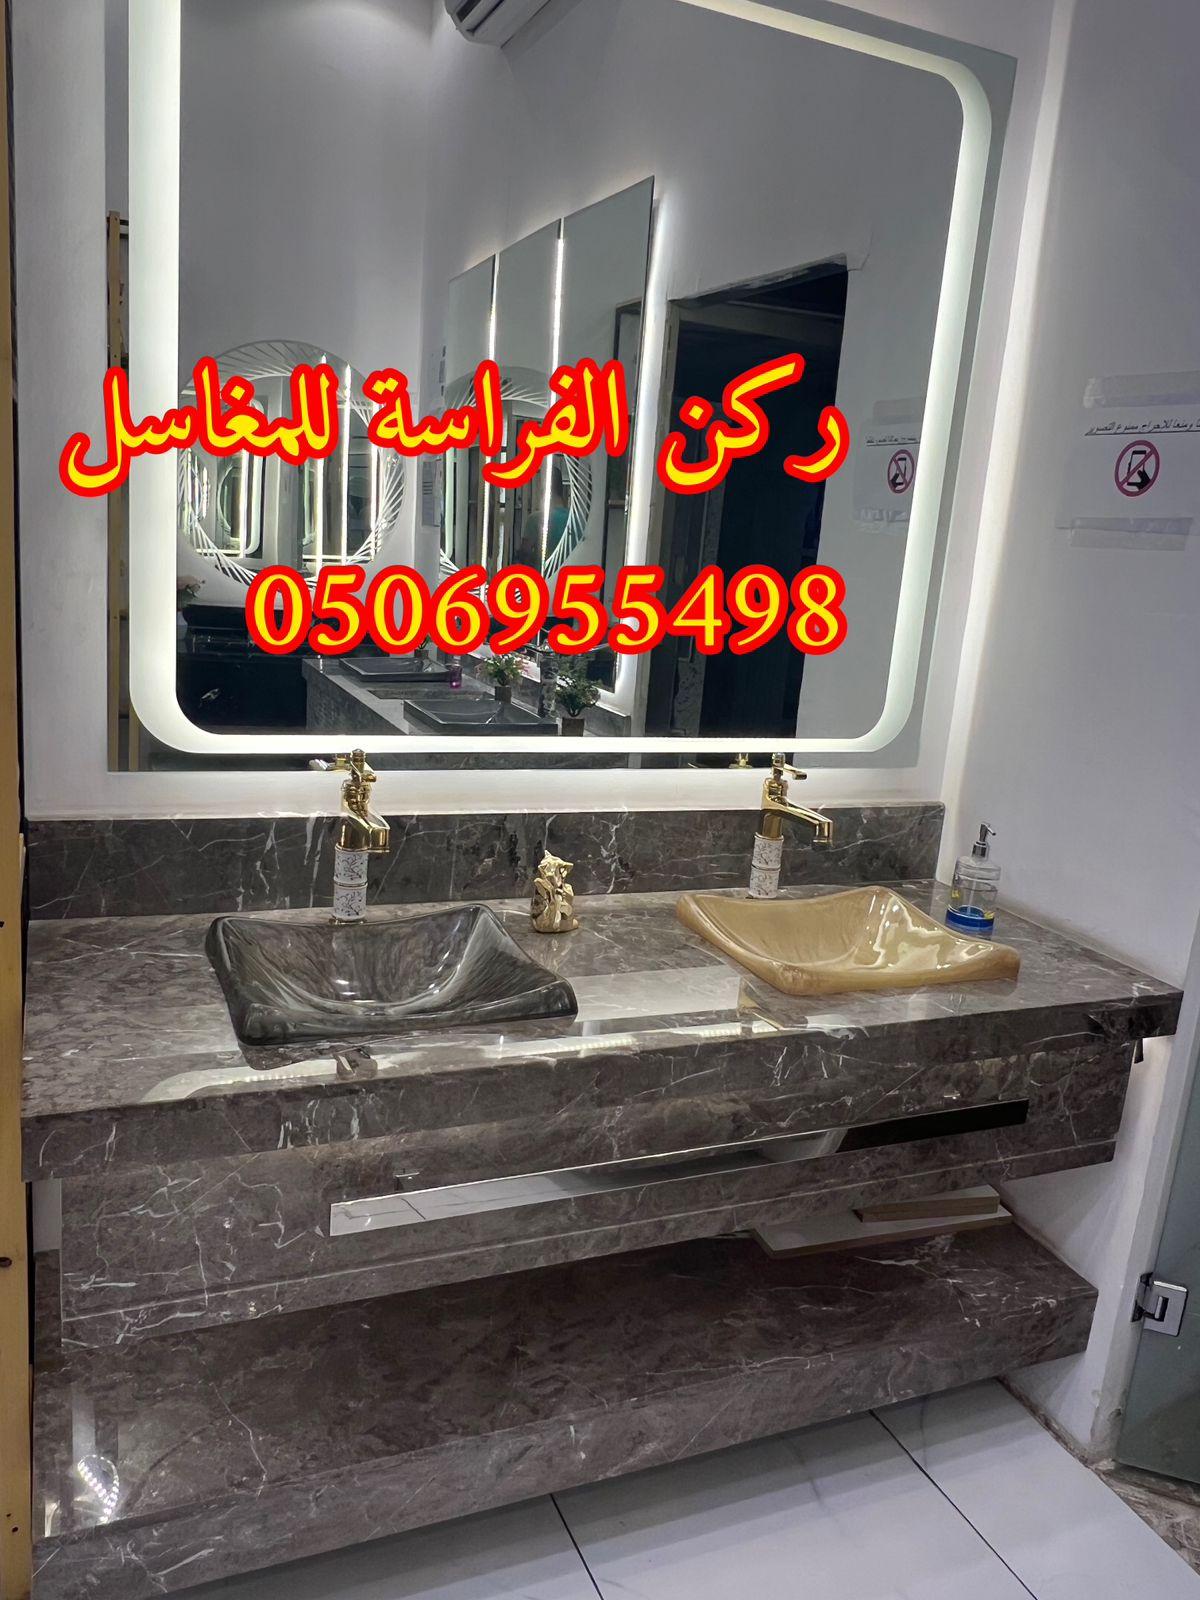 احواض مغاسل رخام في الرياض,0506955498 469595347